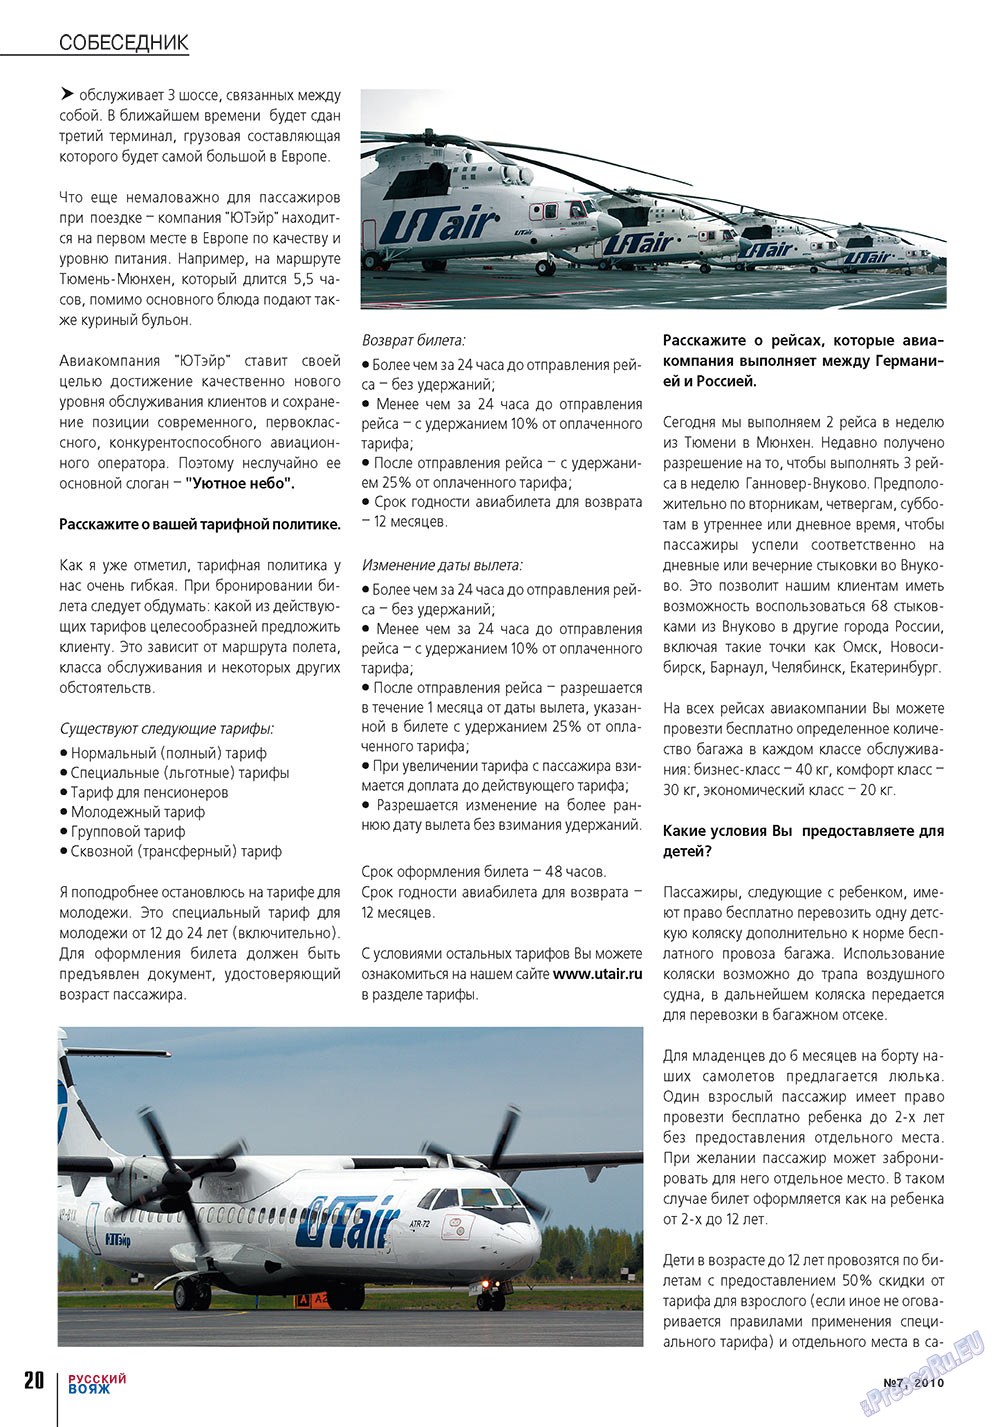 Русский вояж, журнал. 2010 №7 стр.20